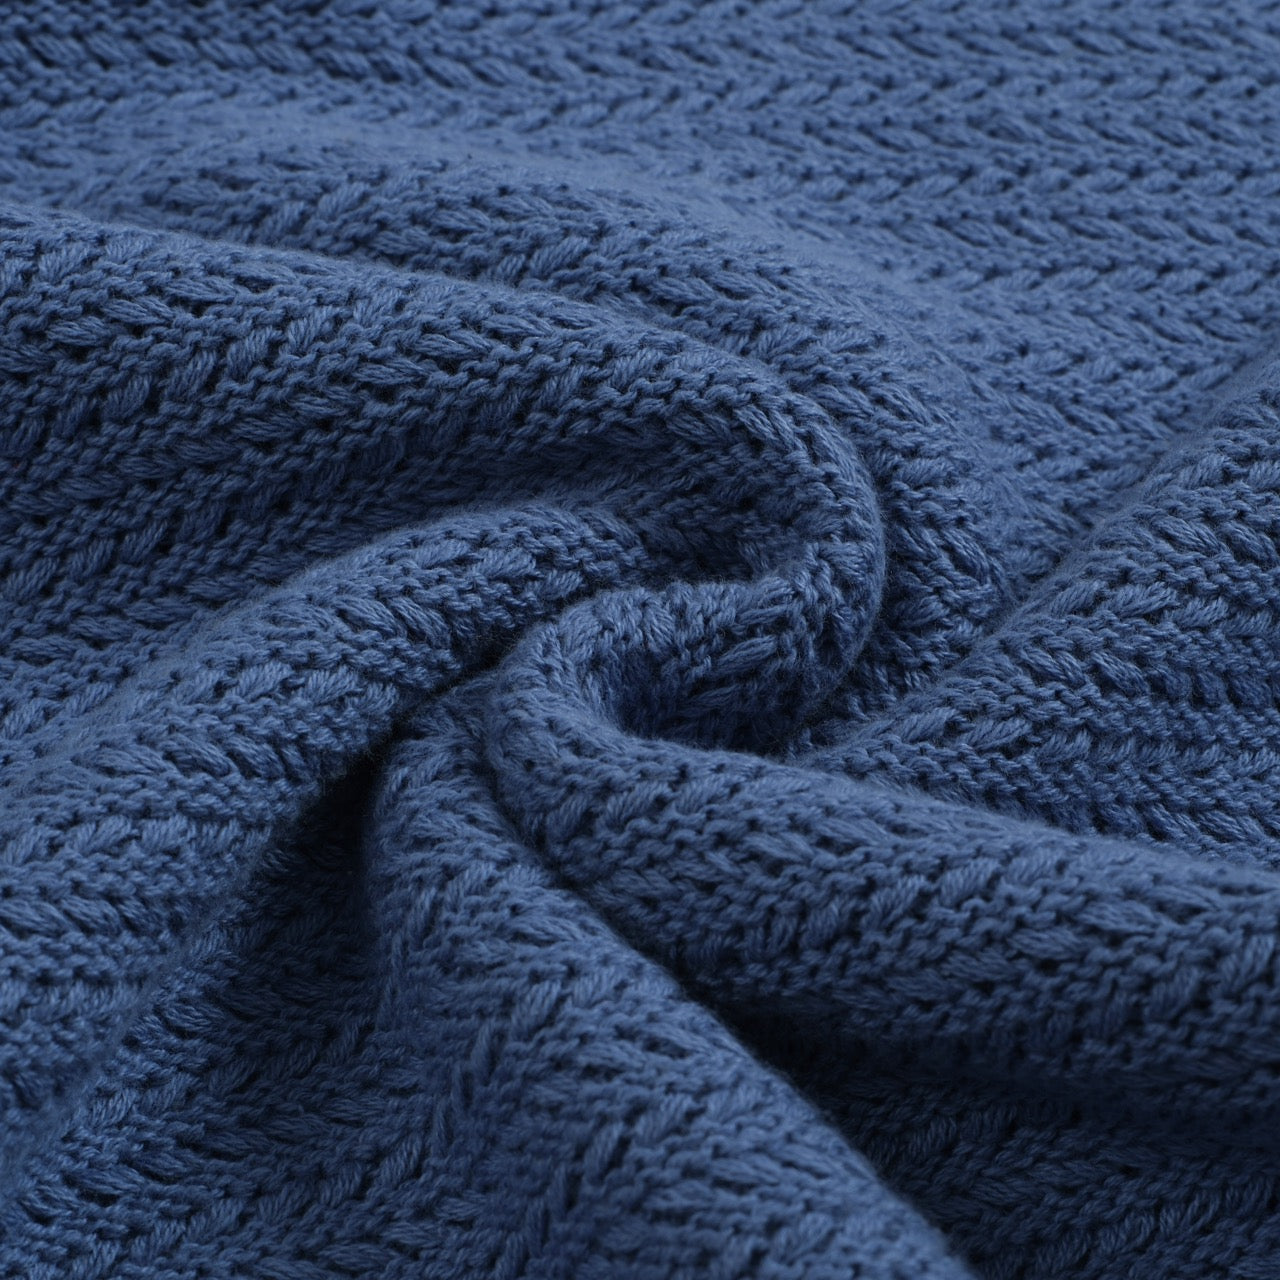 Men's Light Blue Knitted Long Sleeves Polo